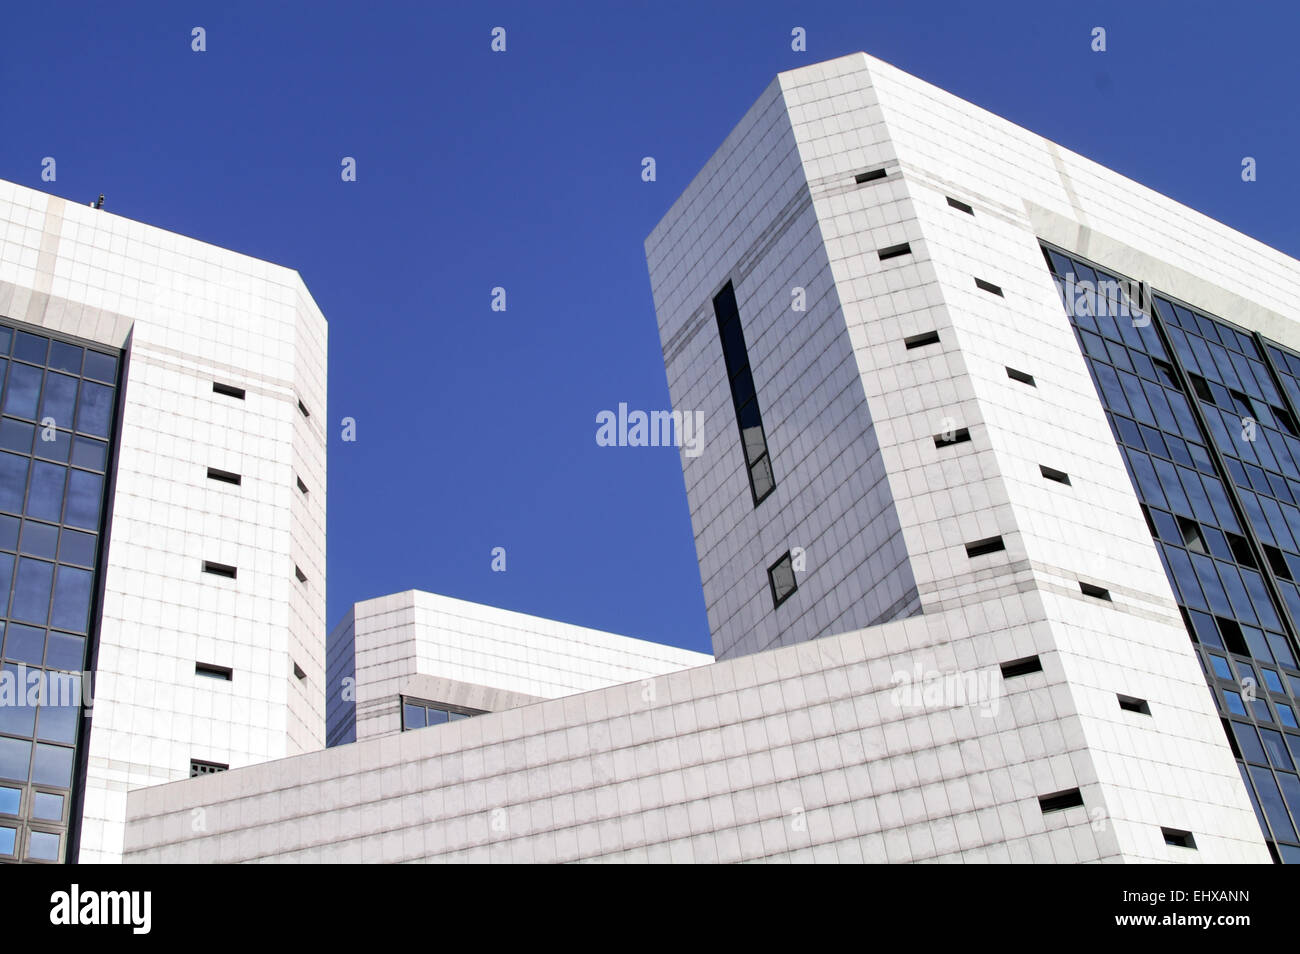 Elegante e moderno edificio per uffici con piastrelle di marmo bianco in un cielo blu Foto Stock